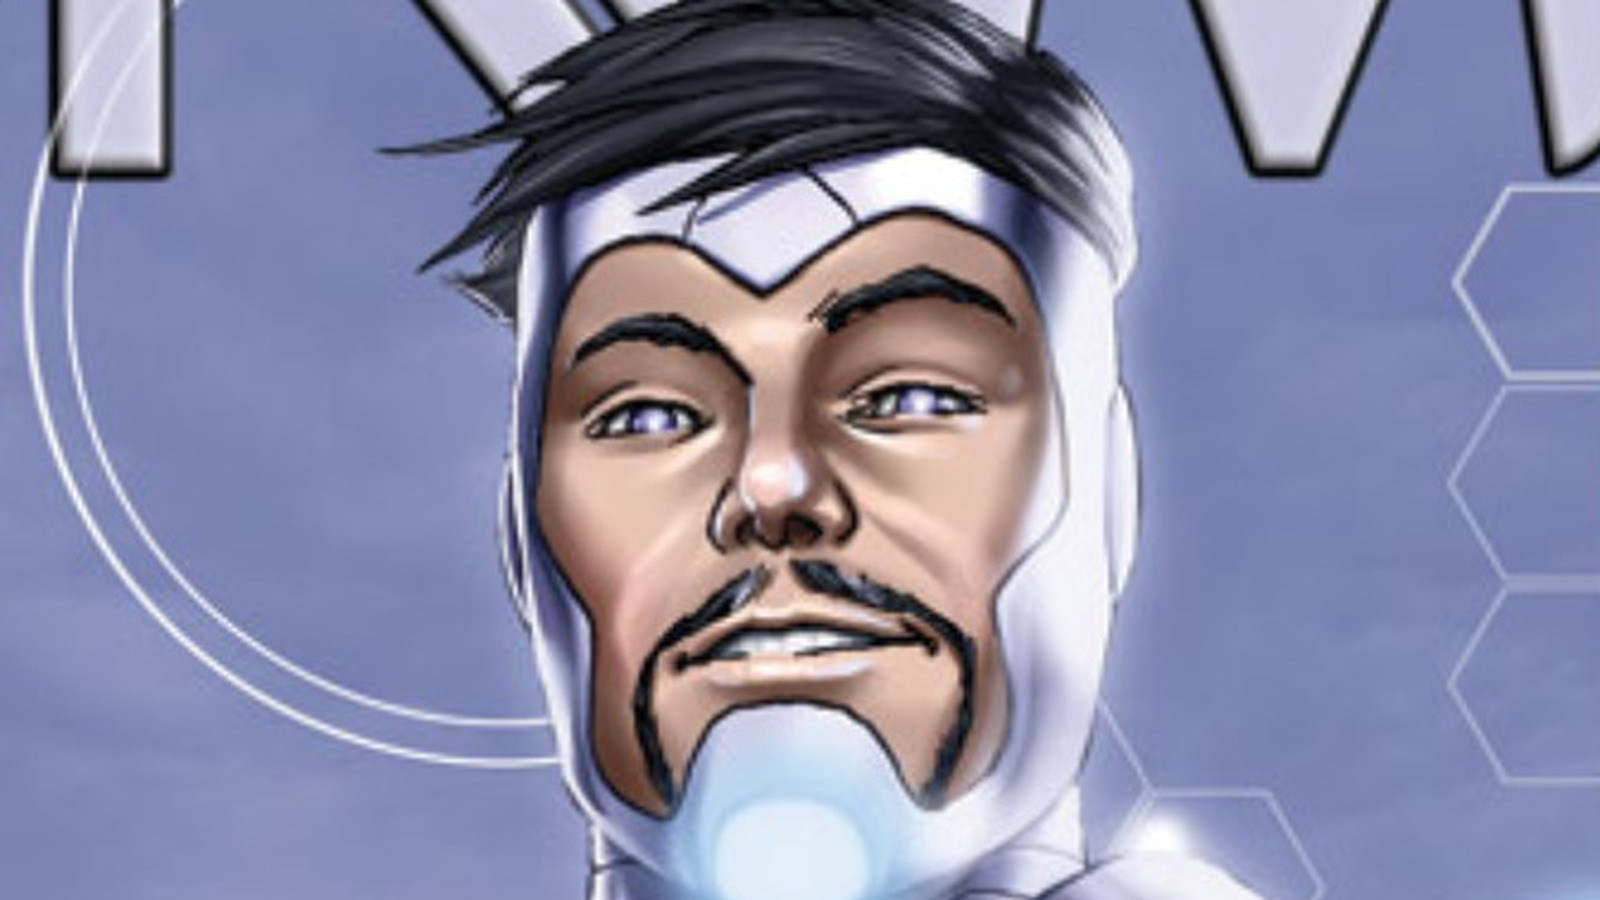 Iron Man (Tony Stark) In Comics Powers, Villains, History